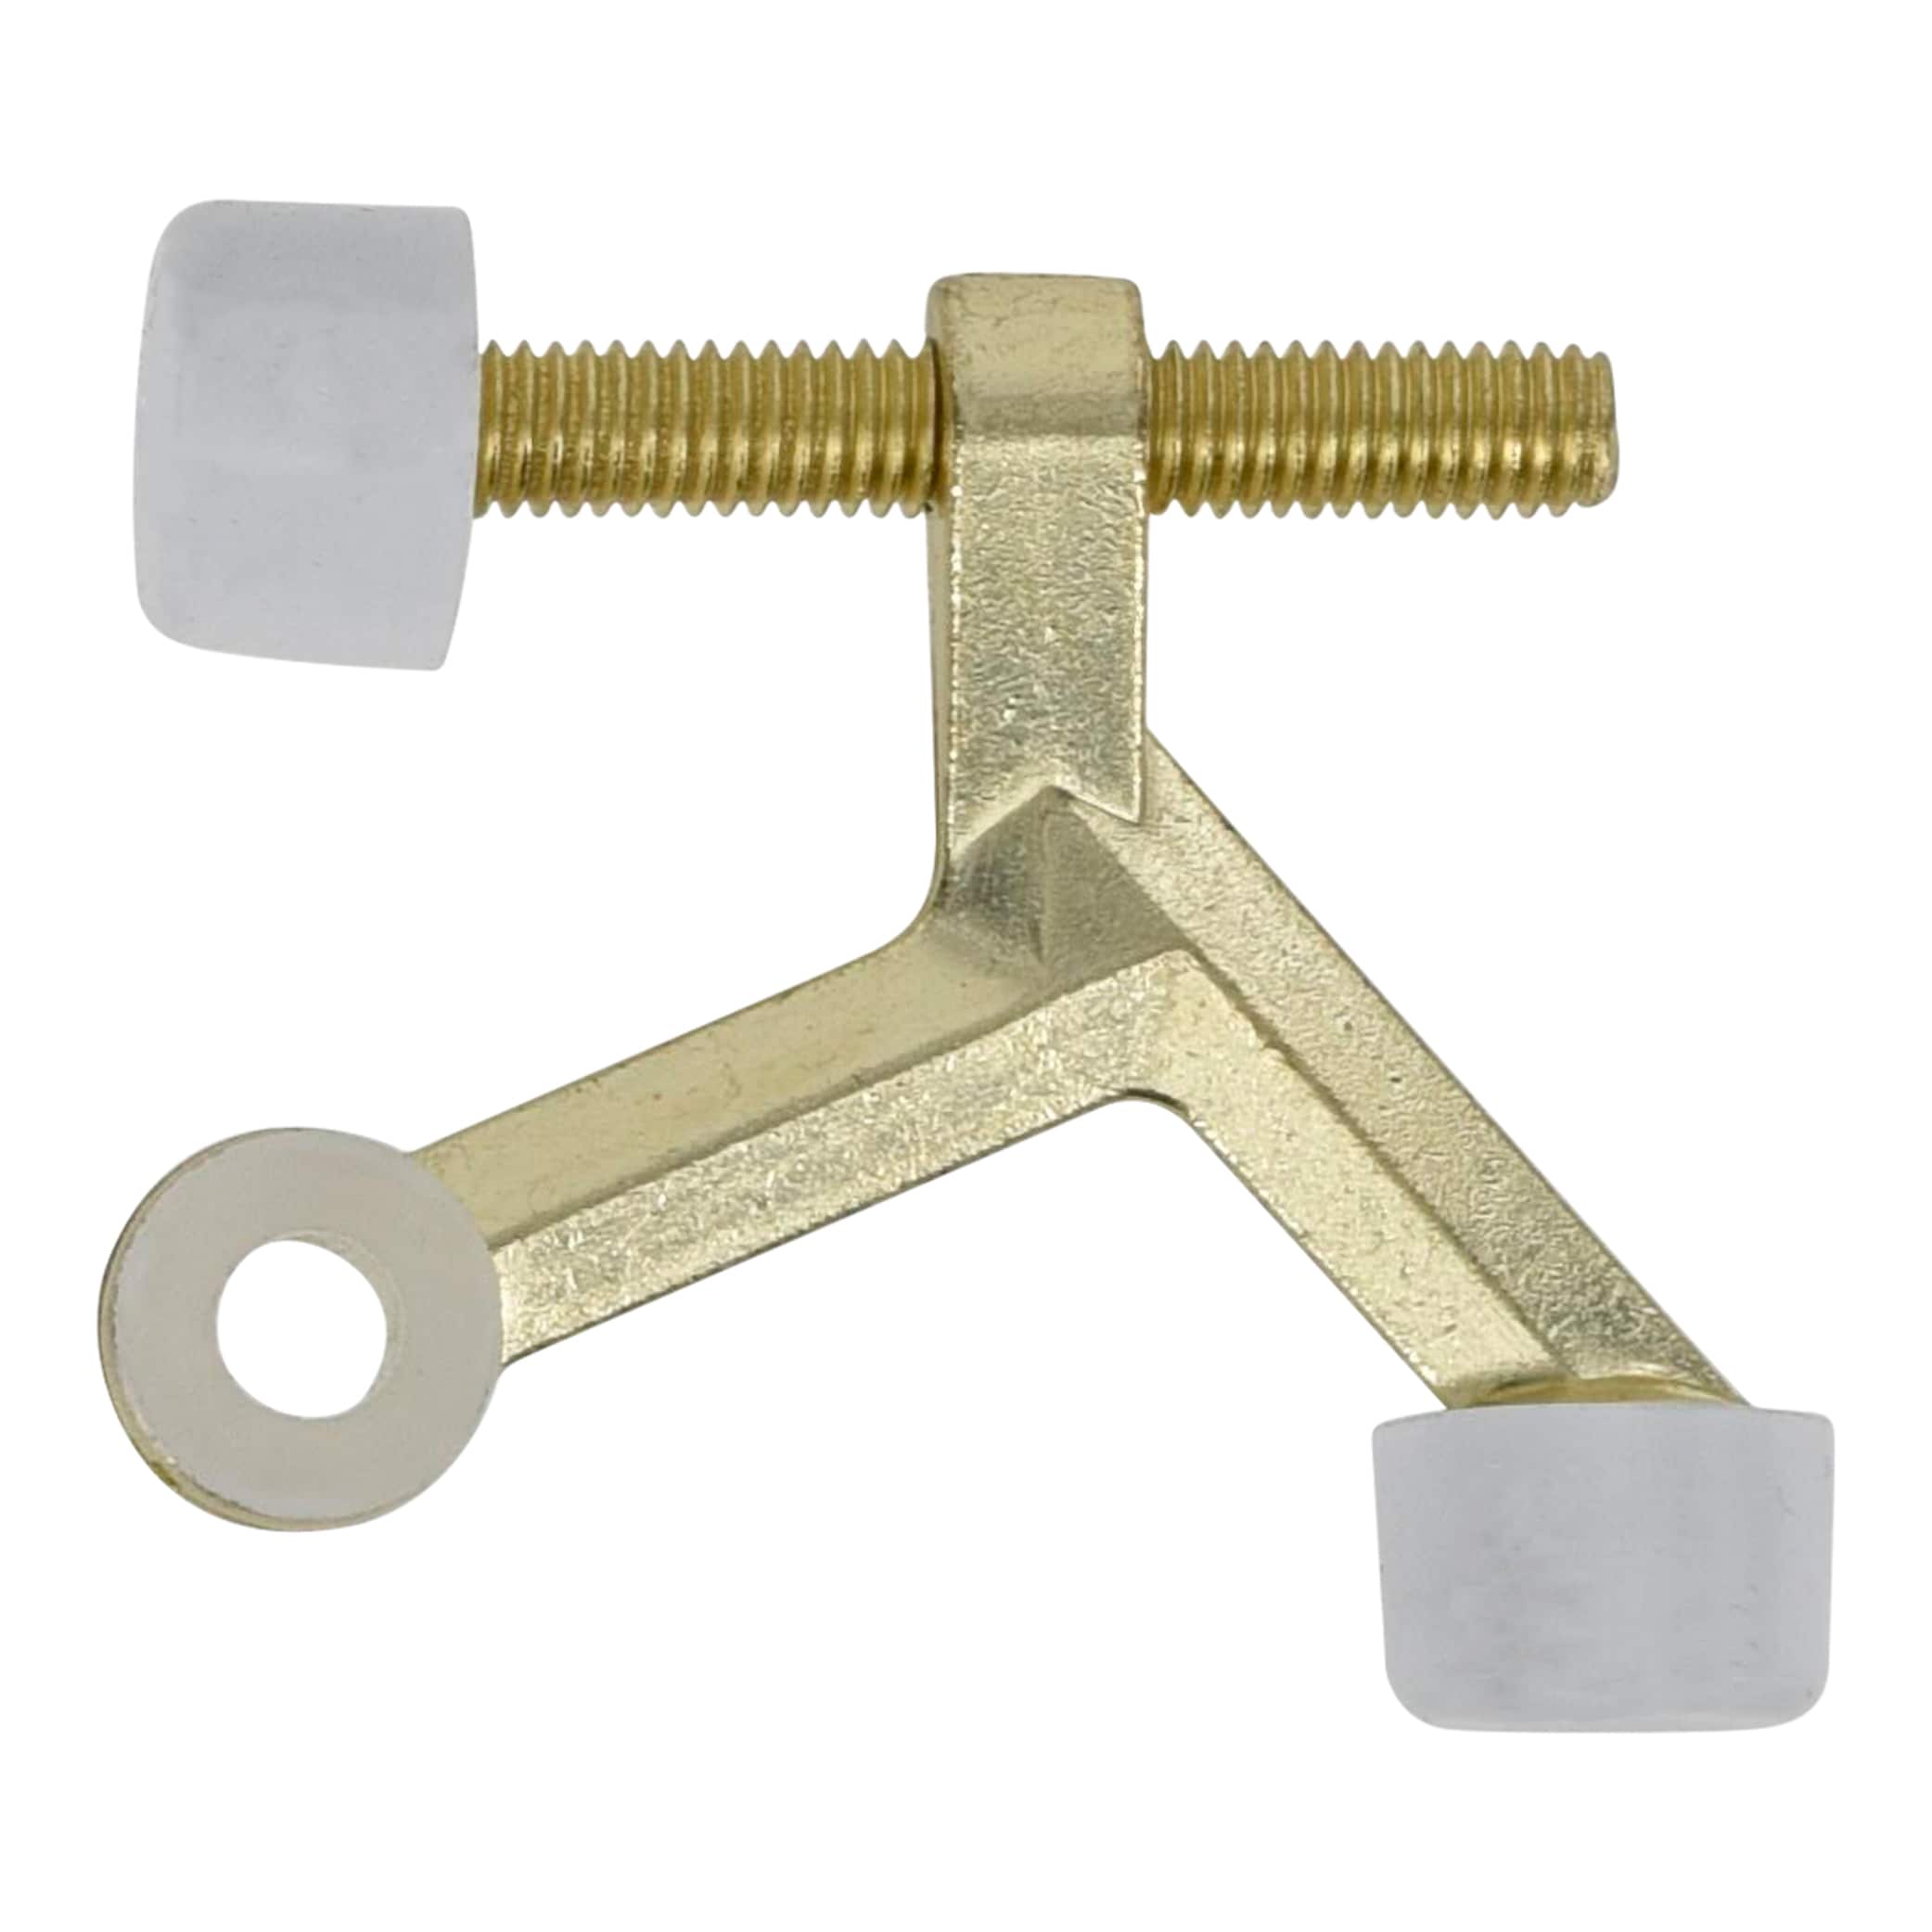 RELIABILT 2-3/5-in Satin Nickel Hinge Pin Door Stop